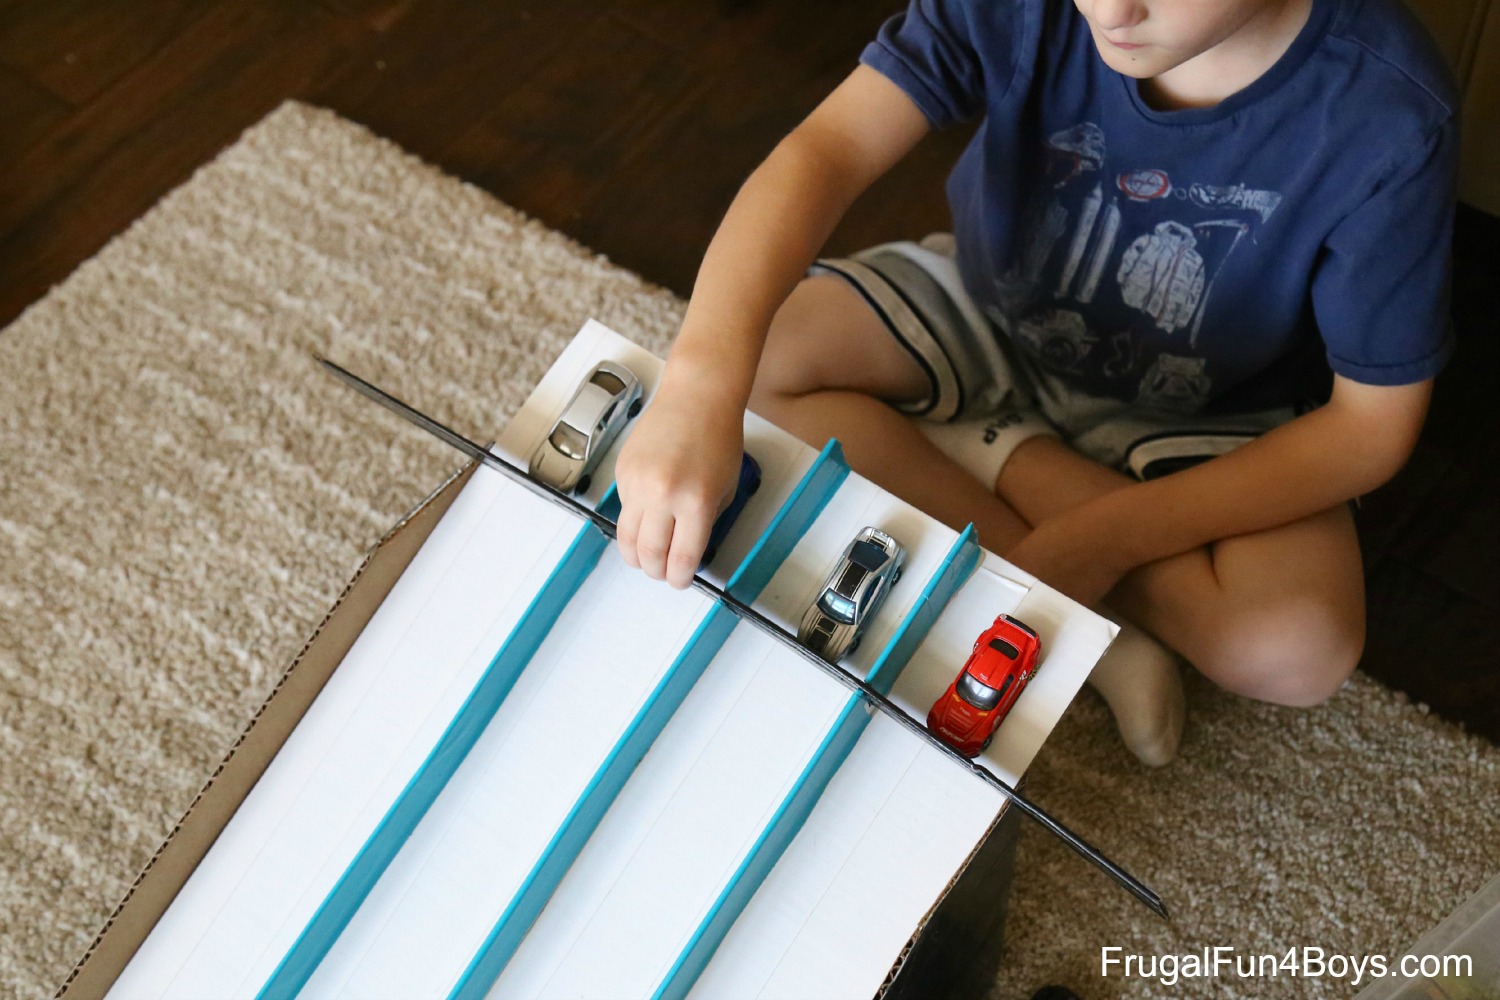 How do you build a cardboard race car?